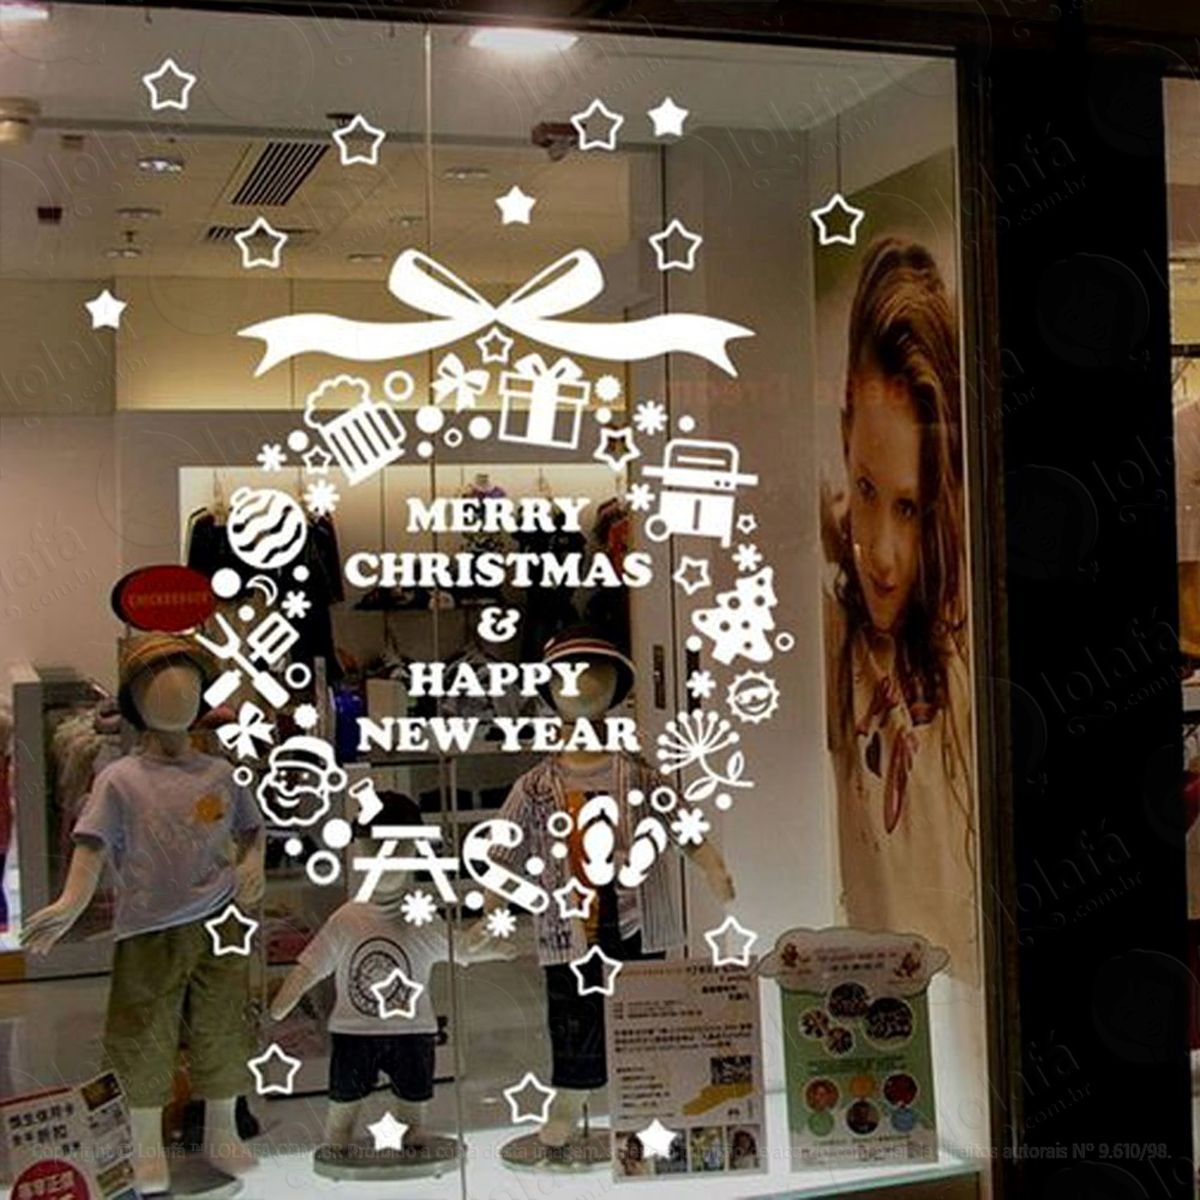 linda guirlanda adesivo de natal para vitrine, parede, porta de vidro - decoração natalina mod:292